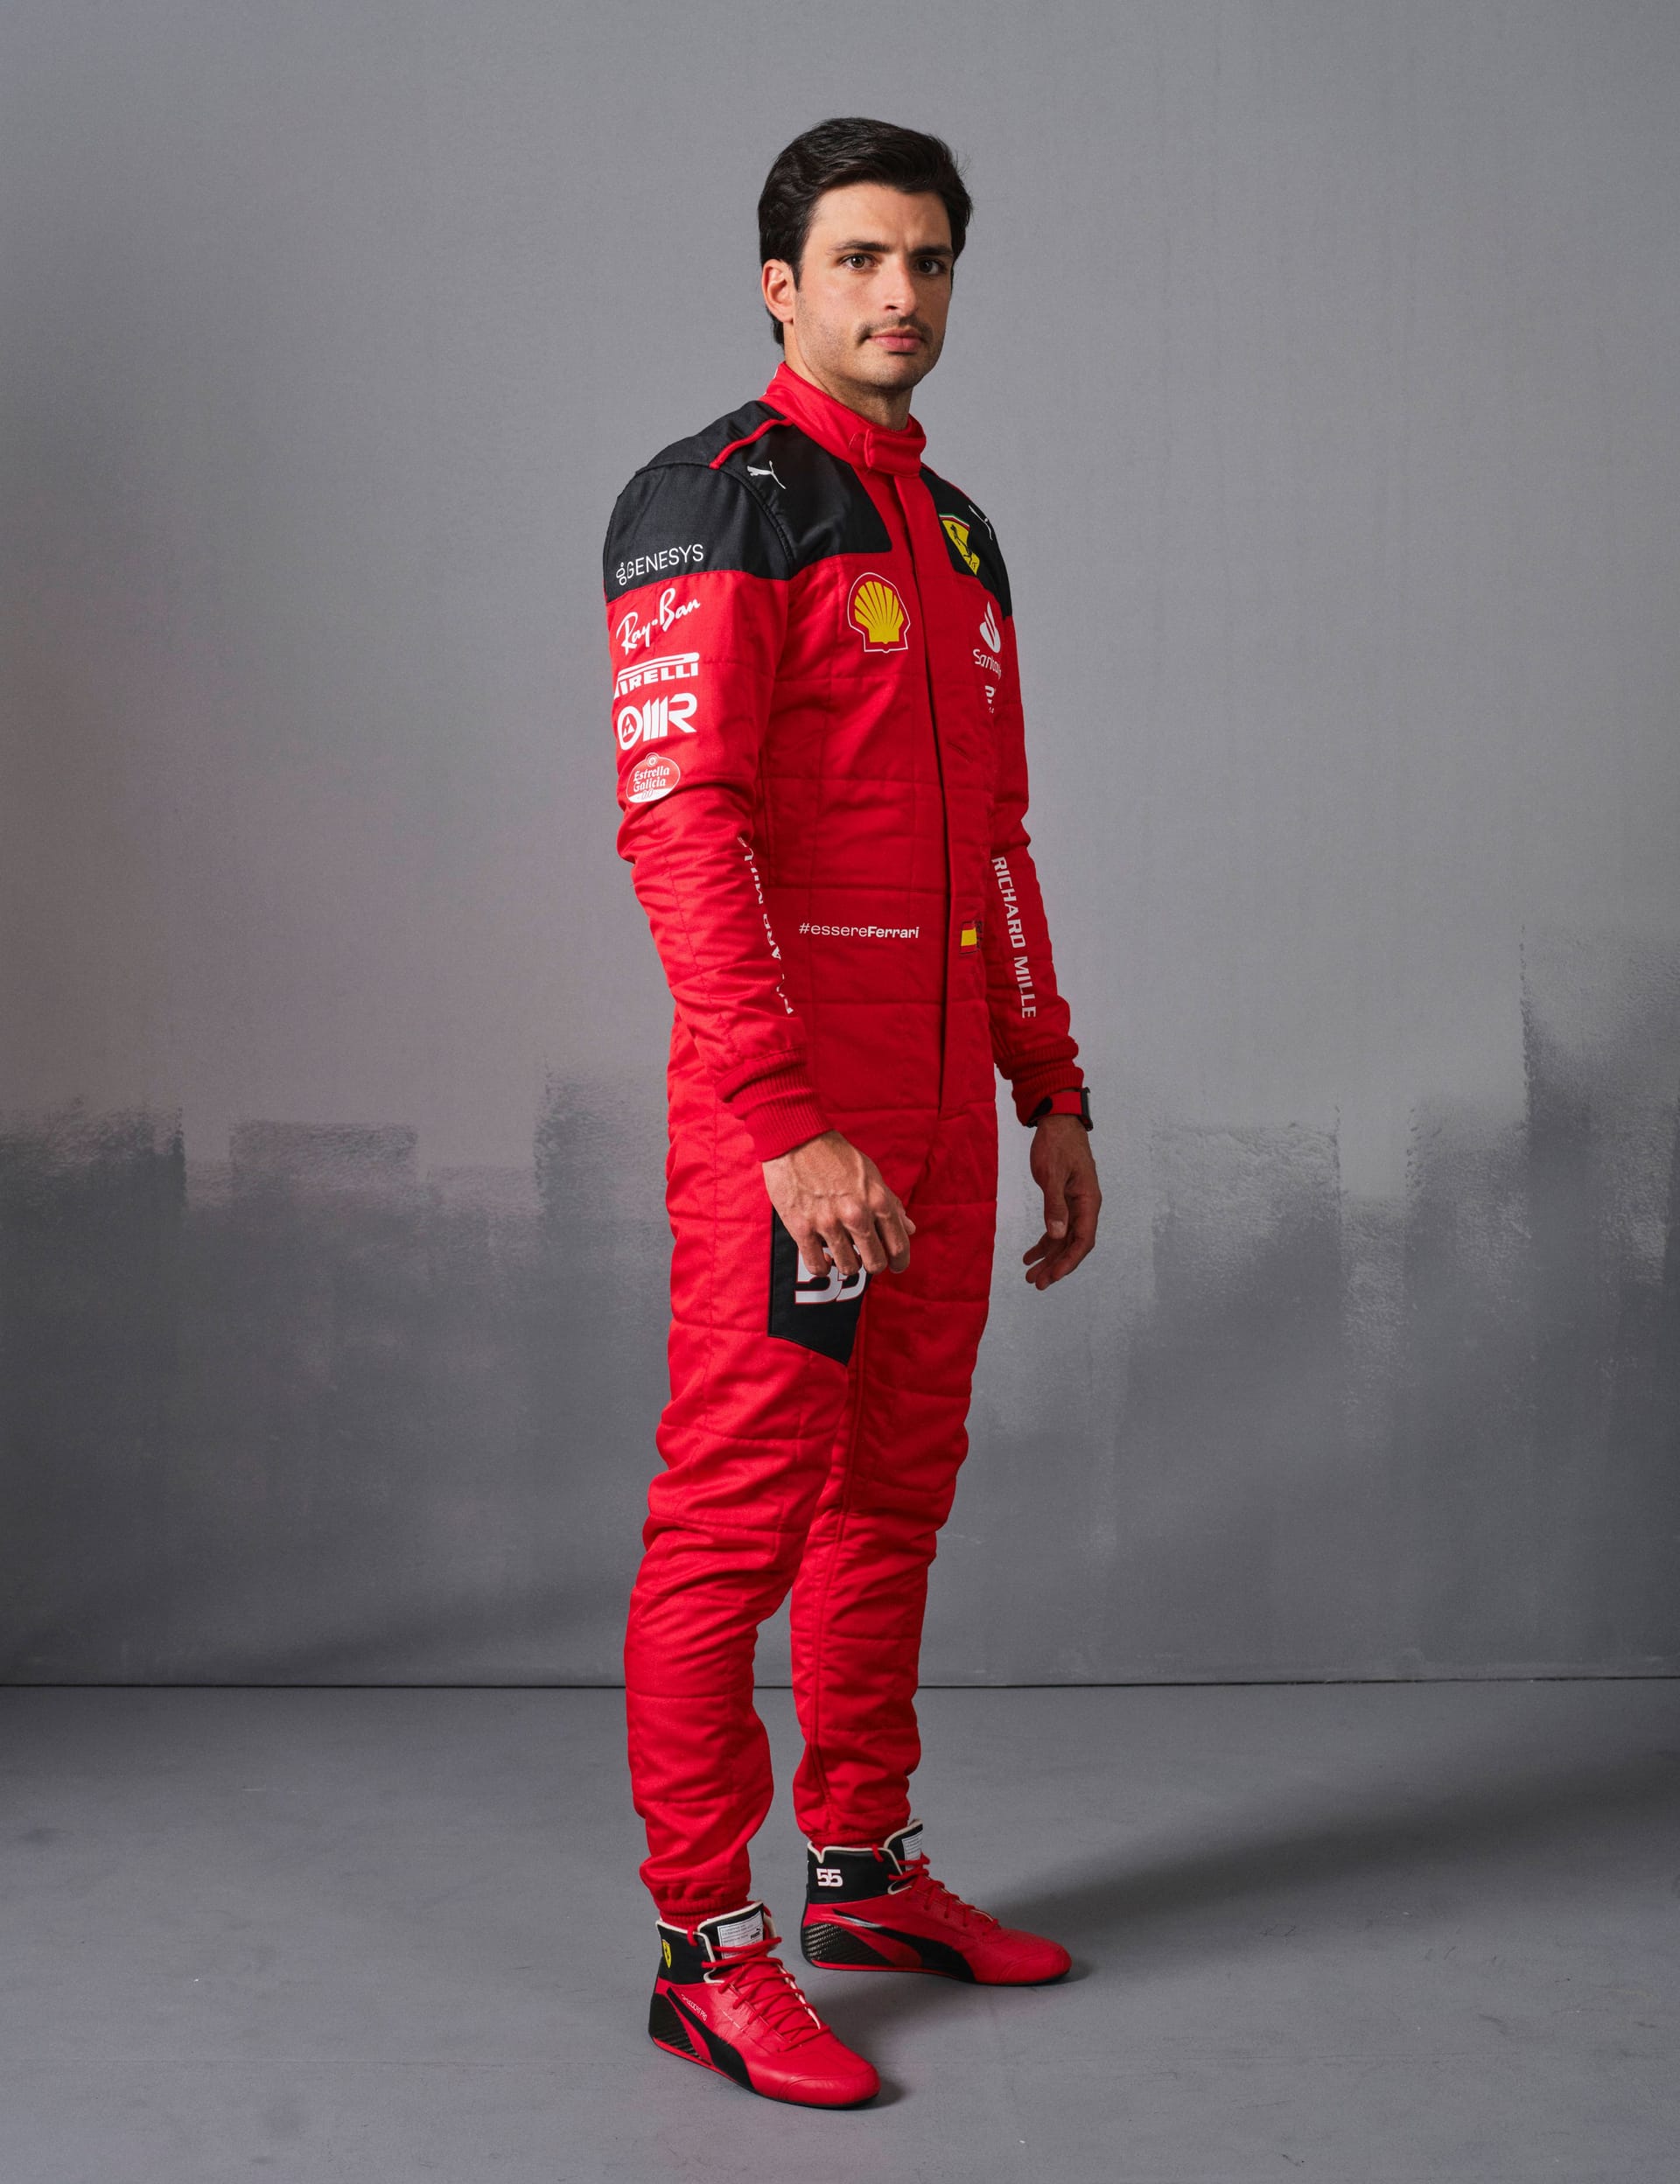 Carlos Sainz: Der Spanier geht in sein drittes Jahr für Ferrari. Im vielversprechenden Duo mit Leclerc fiel Sainz etwas ab, konnte gleich sechs Rennen nicht beenden. Am Ende wurde es WM-Platz 5 für den 28-Jährigen.